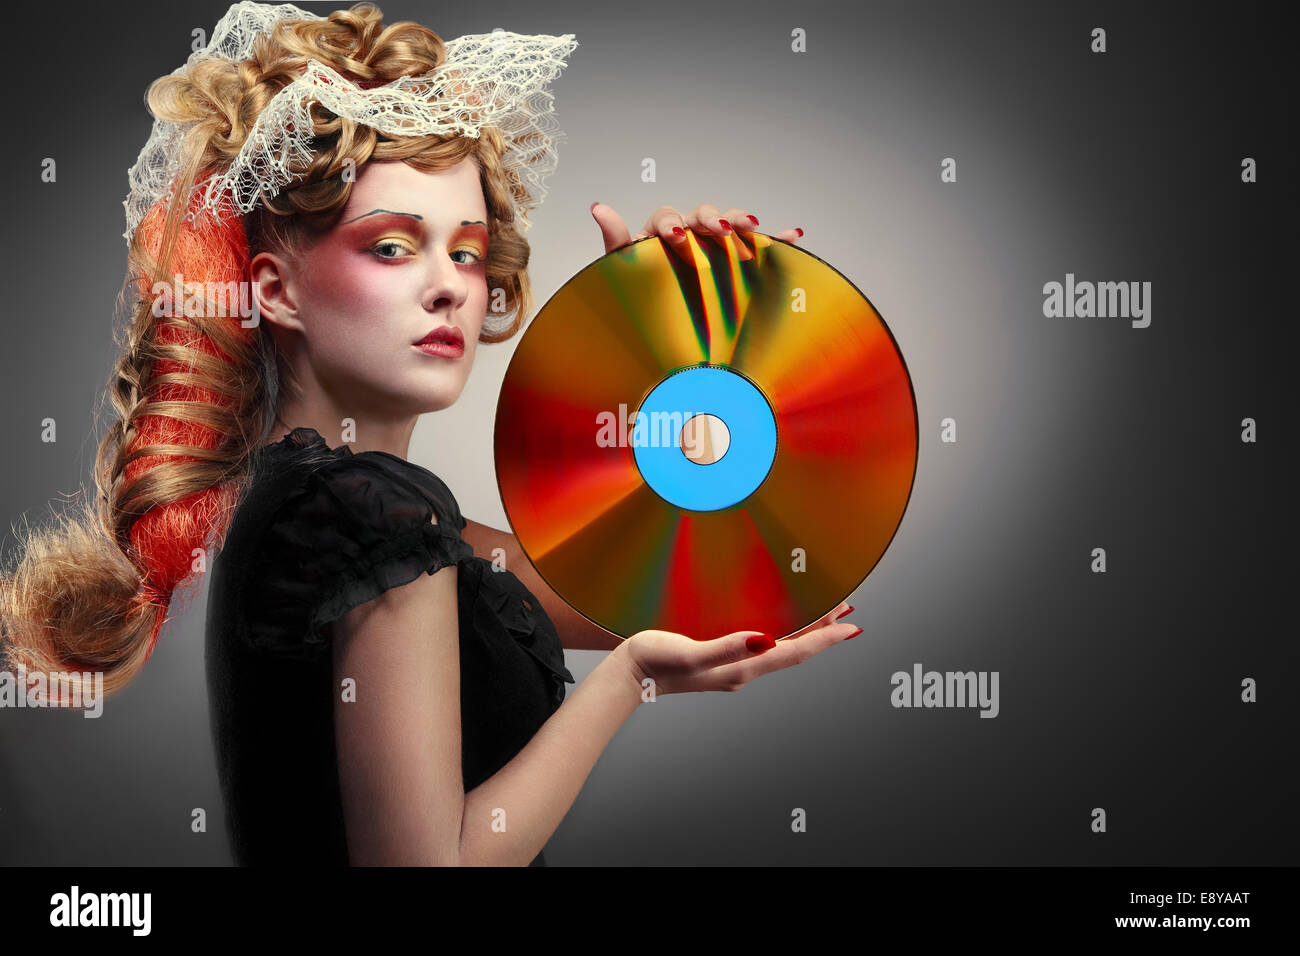 Laserdisco shining girl Stock Photo